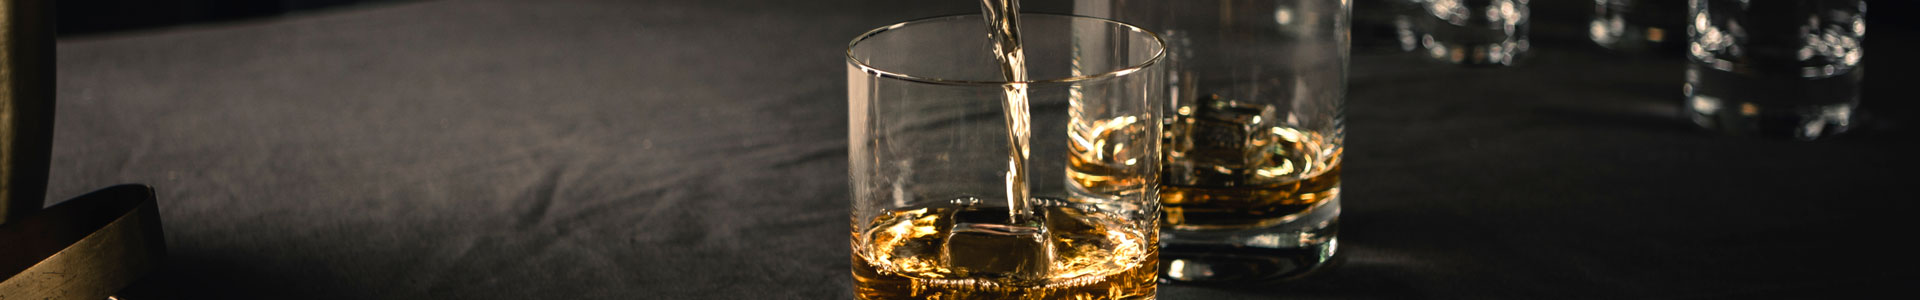 Whiskygläser aus der Paris Gläser-Serie von Zwiesel Glas.